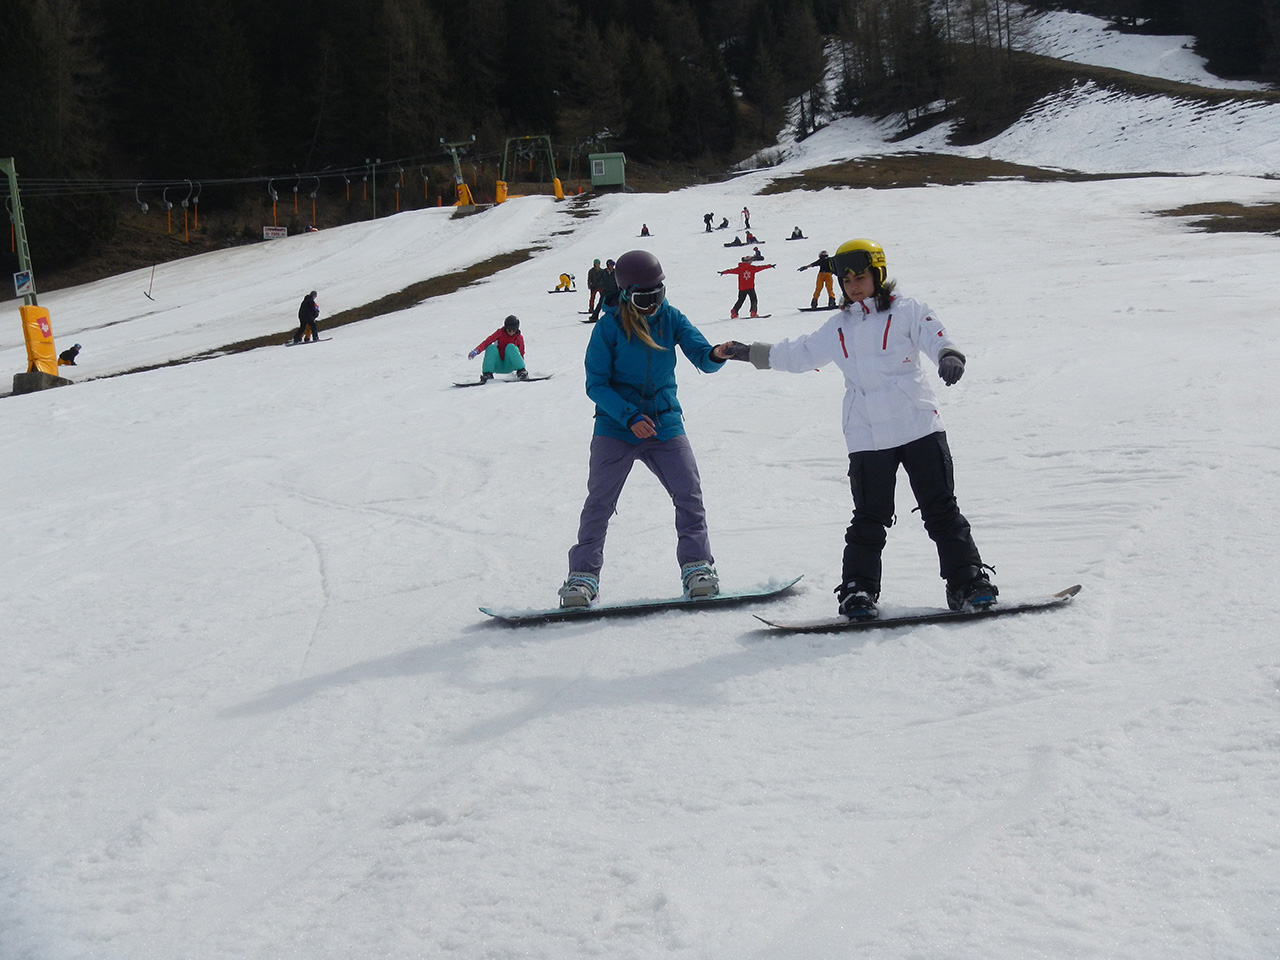 Dank "Chill" können die Mädels und Jungs zum ersten Mal aufs Snowboard steigen | © Burton